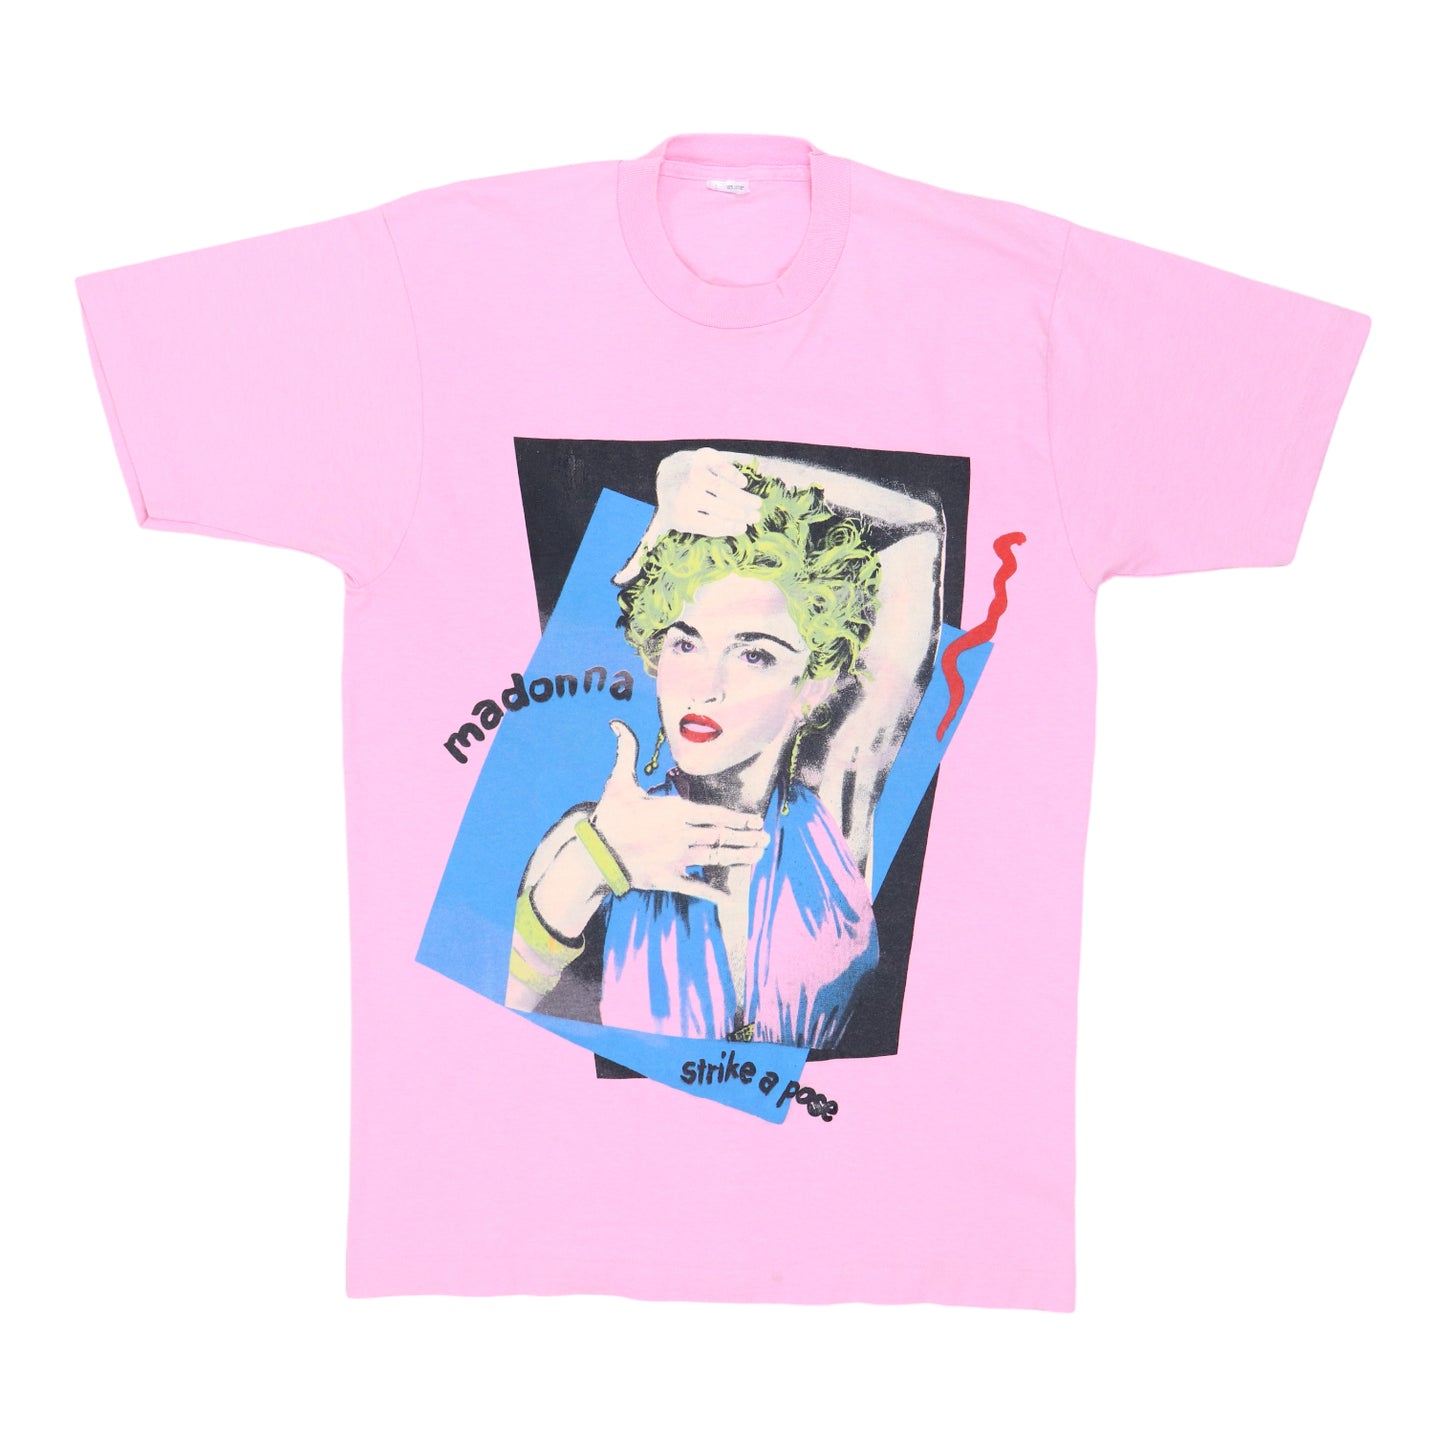 madonnalicious: UNIQLO Music Icons Madonna Tshirts